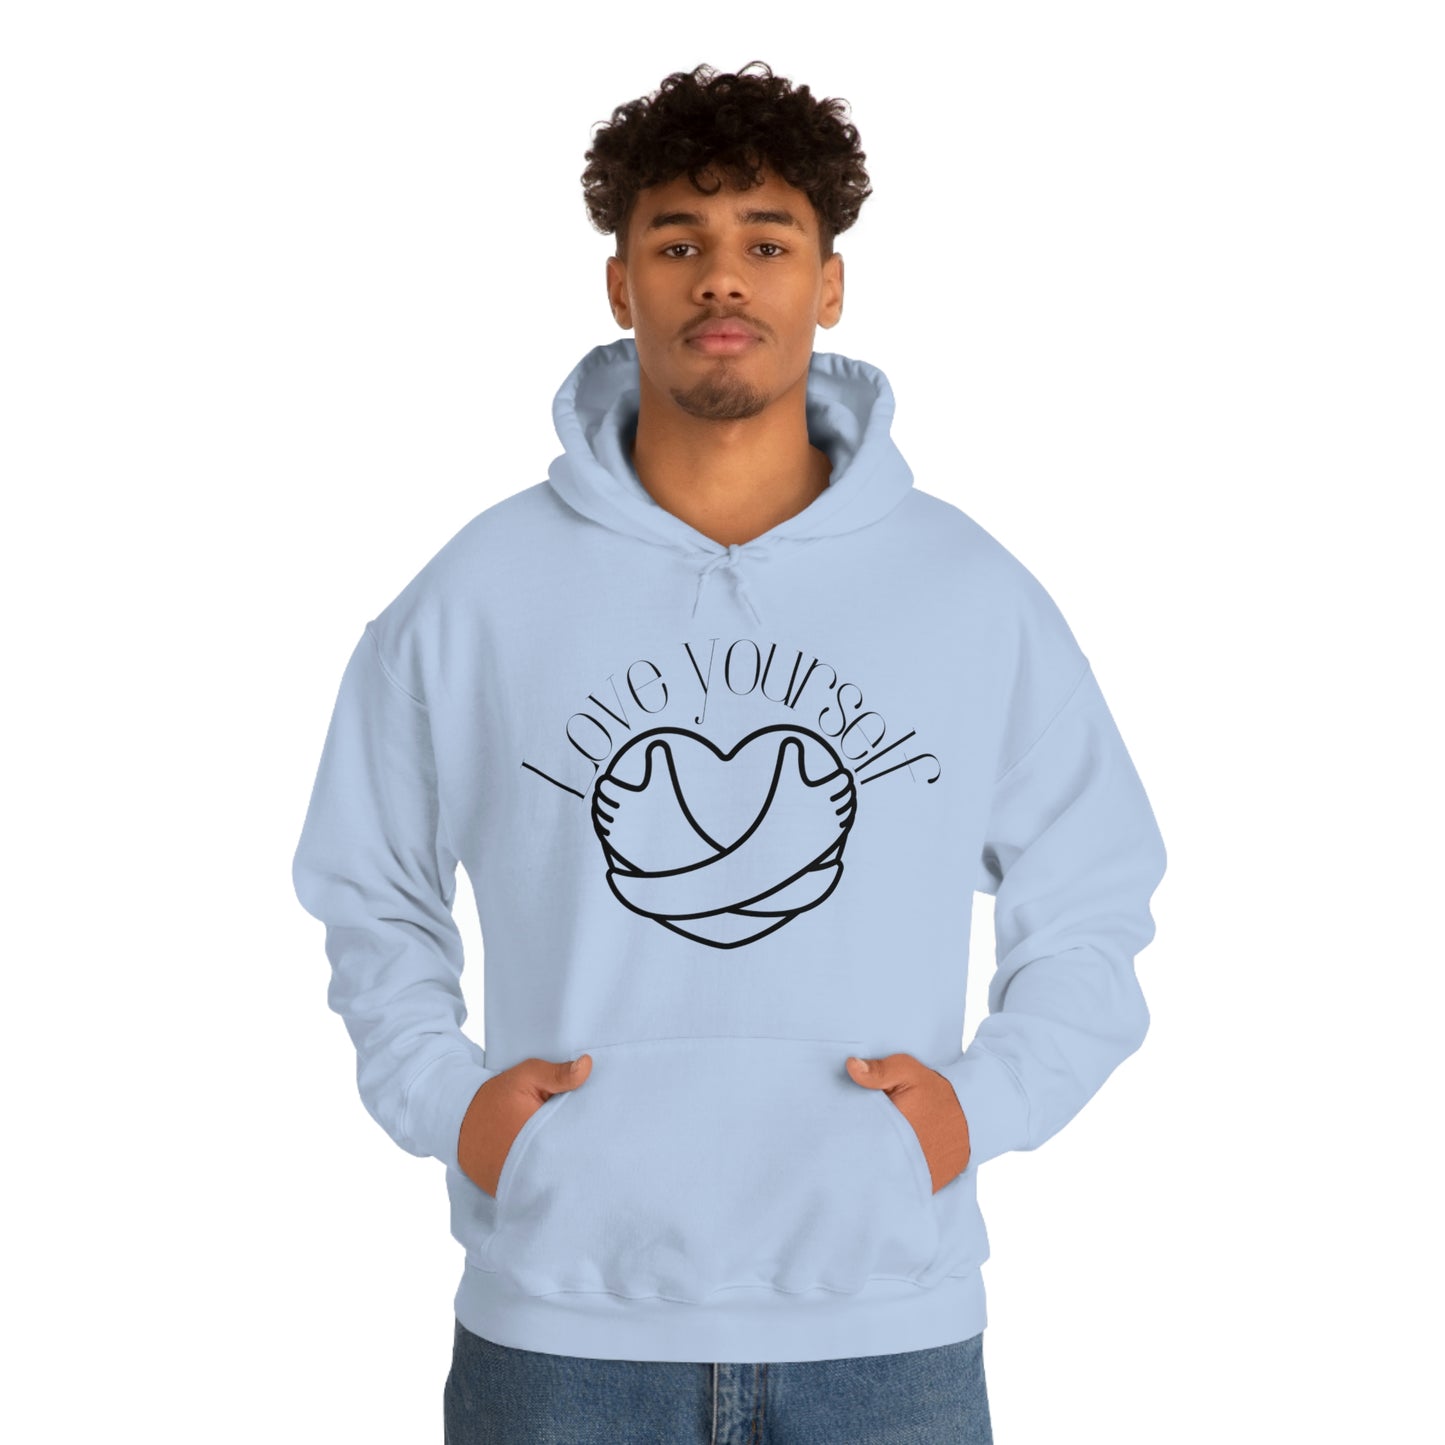 Love Yourself - Unisex Hooded Sweatshirt